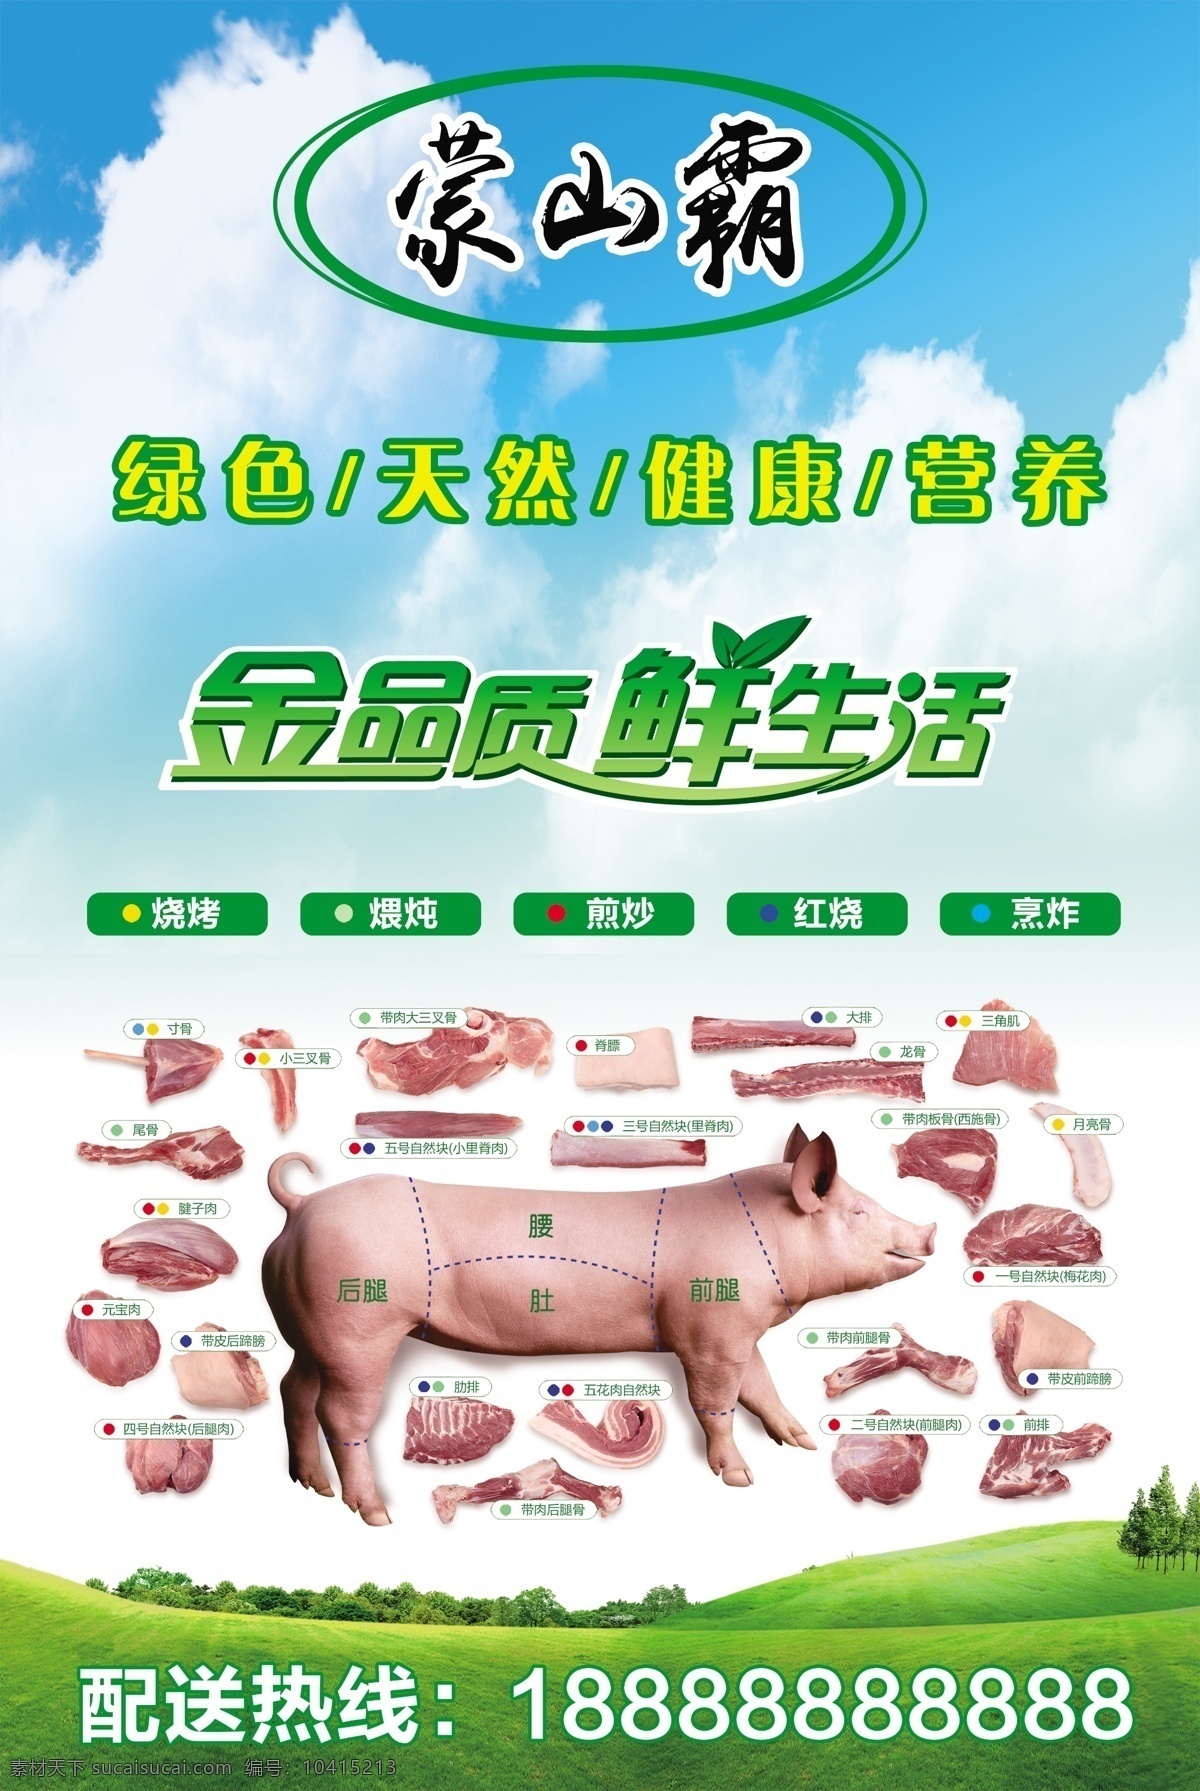 猪肉 分布图 猪肉分布图 健康 猪肉部位图 绿色 蓝天白云 草原 展板 海报 宣传页 单页 展板模板